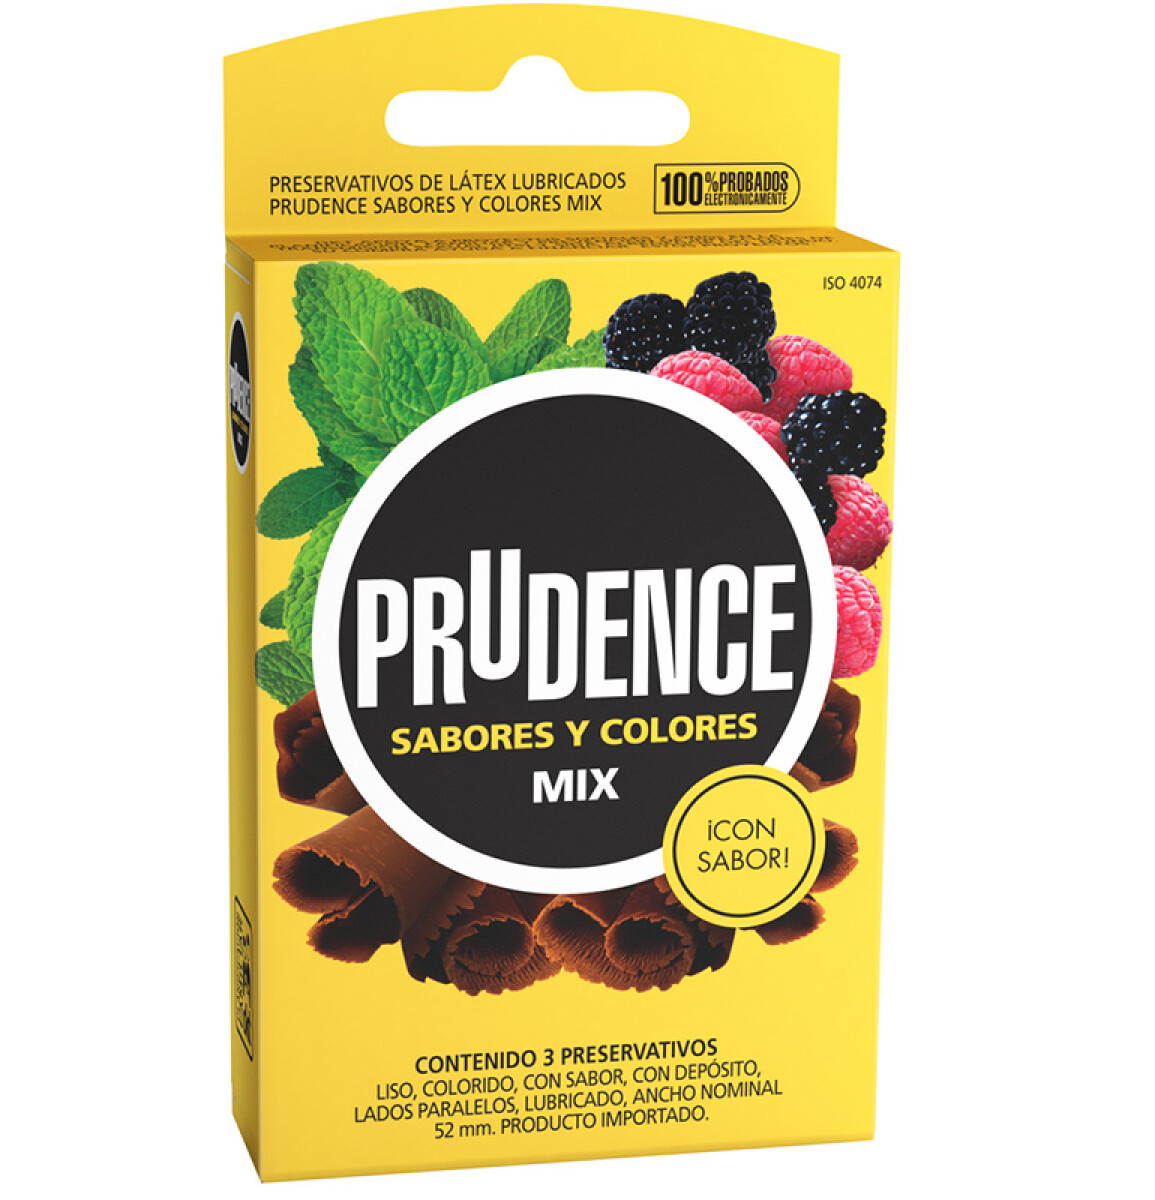 Preservativos Prudence - Sabores y colores mix 